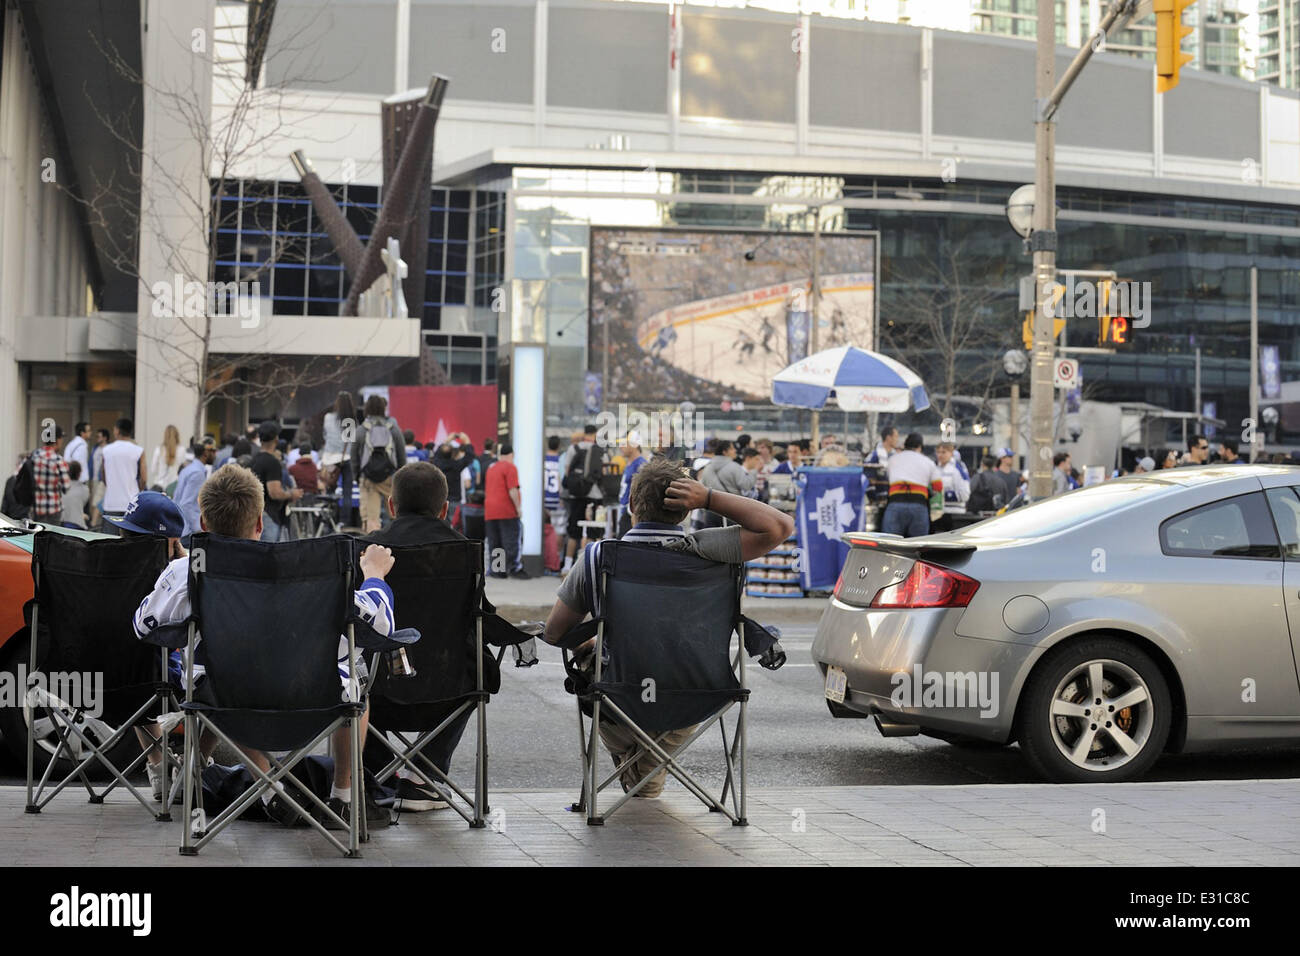 Fans Setup vorderen Sitzreihe auf der Straße beobachten Tausende von Toronto Maple Leafs Fans verpackt Maple Leafs Quadrat zu sehen die Eishockey Playoff-Spiel am TV-Großbildschirm außerhalb der Air Canada Centre